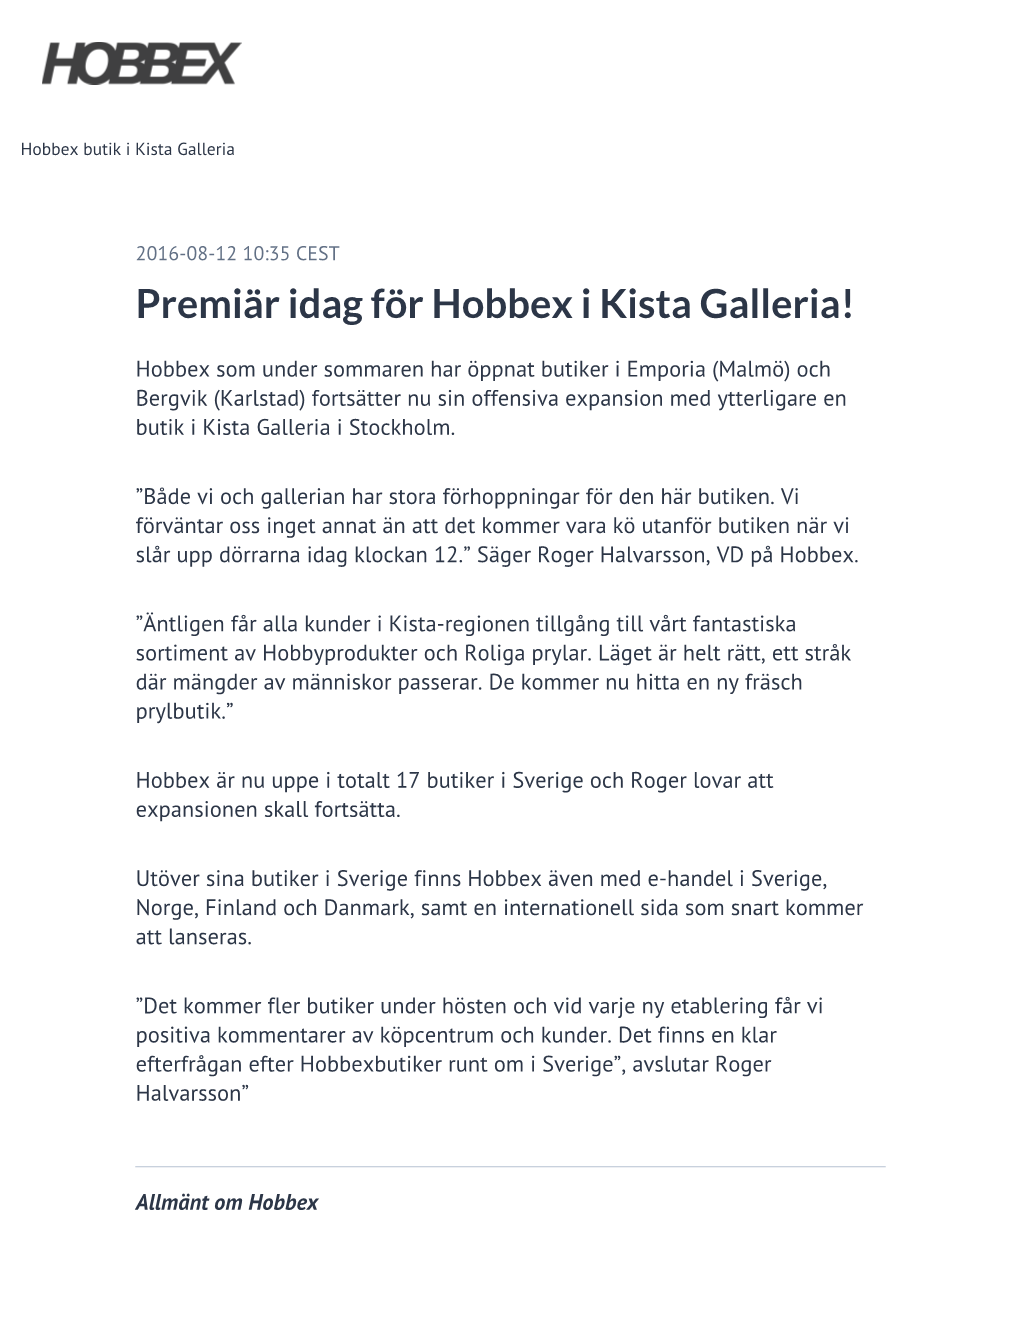 Premiär Idag För Hobbex I Kista Galleria!